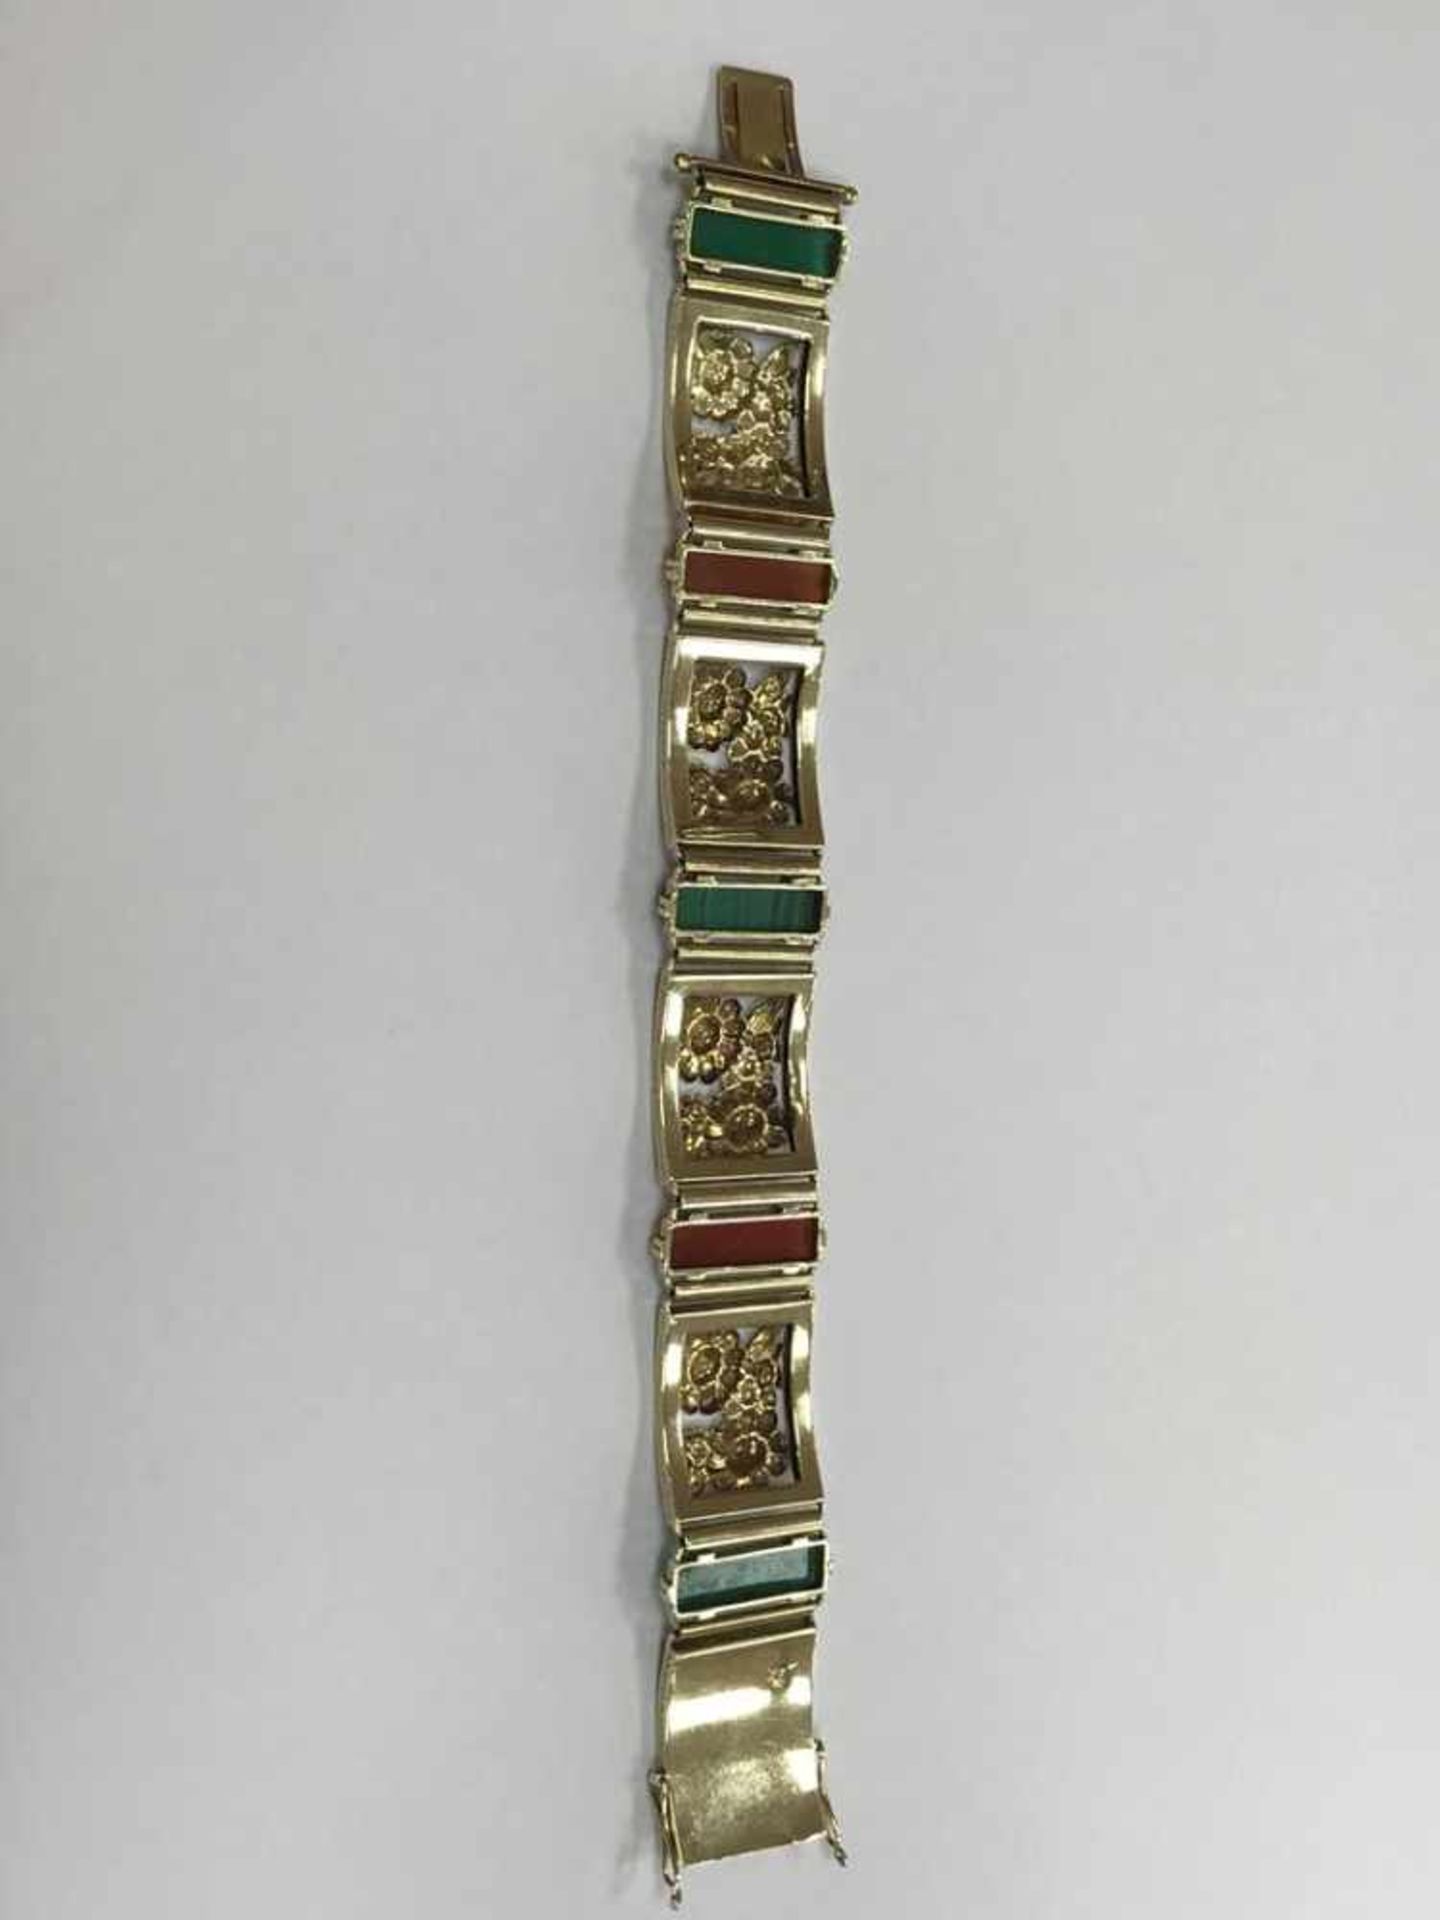 Goldarmband Anfertigung Posen um 1930Feine Handarbeit 585 Gold Armband besetzt mit Edelsteinen: - Bild 4 aus 5